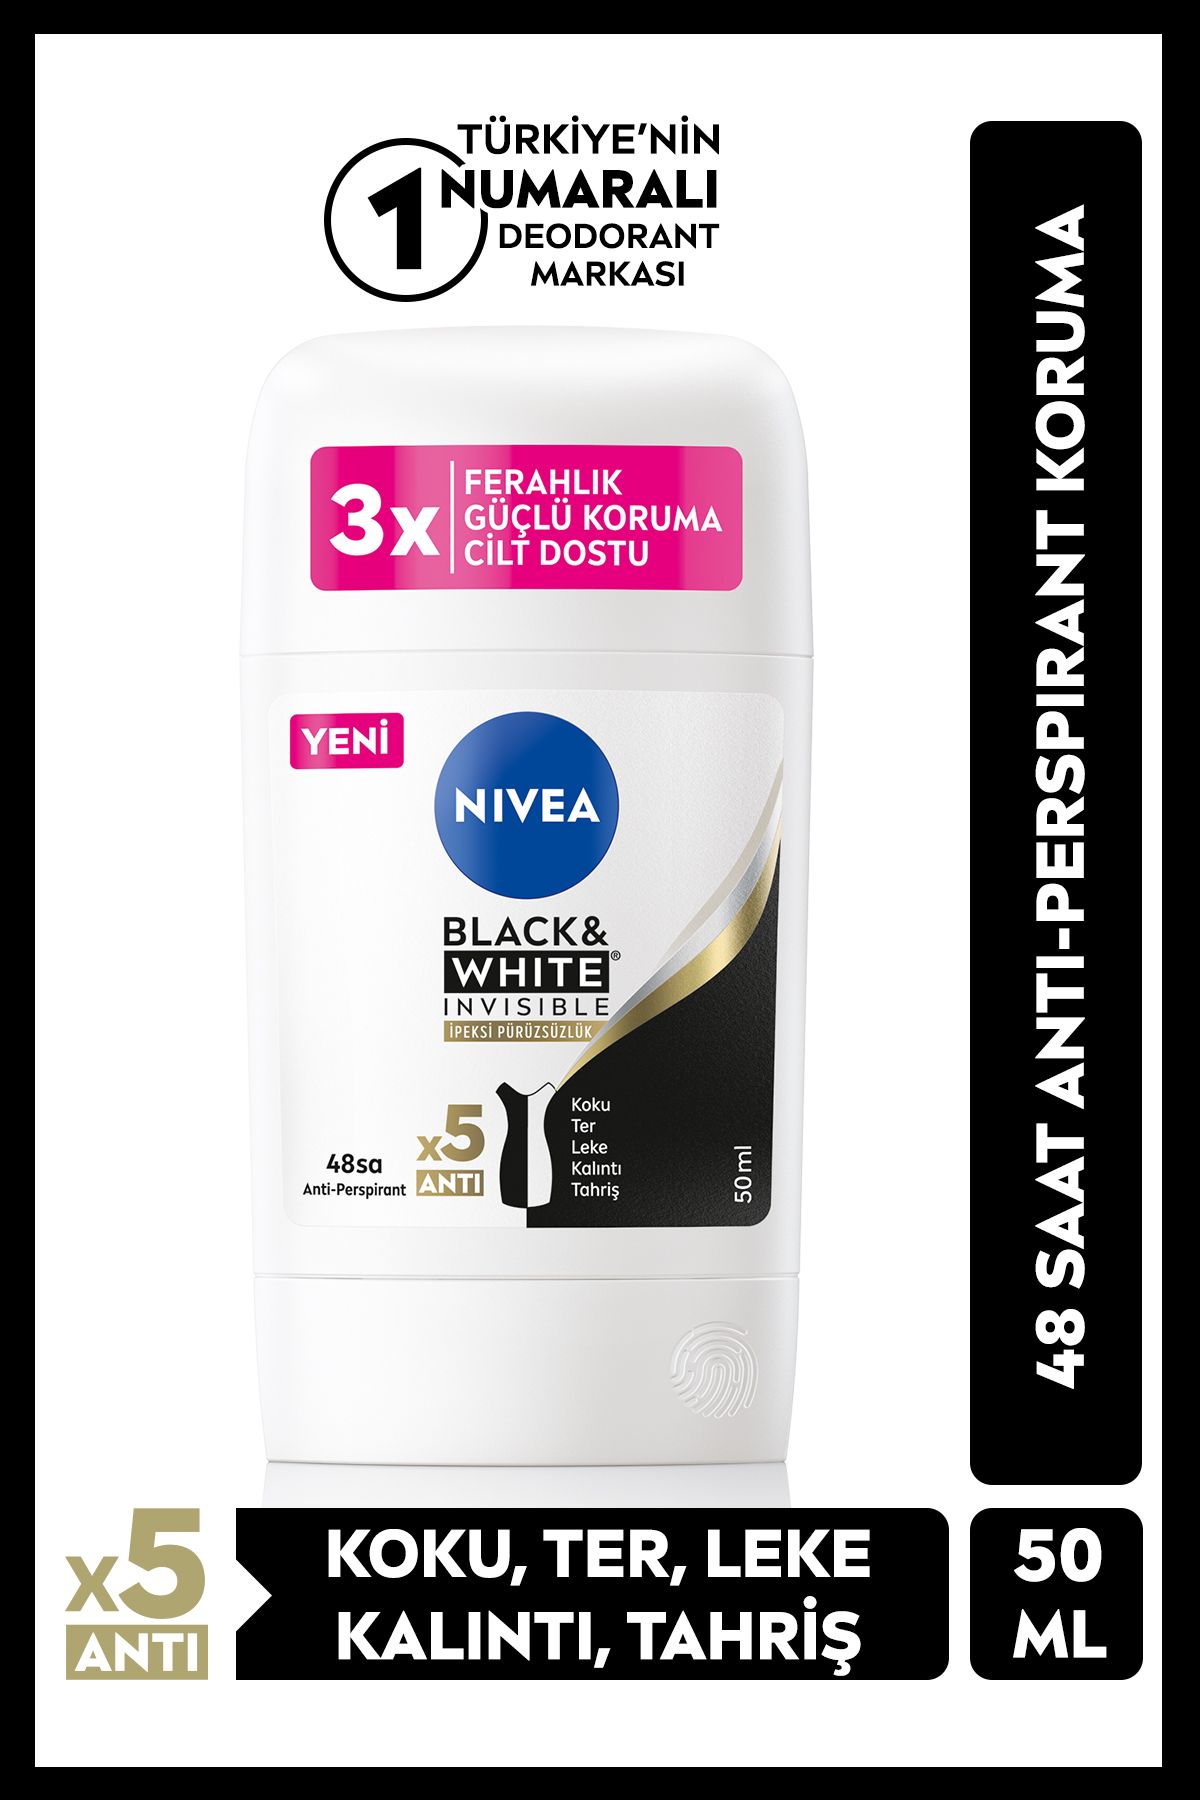 NIVEA Kadın Stick Deodorant Black&White Invisible İpeksi Pürüsüzlük 50ml, 48 Saat Anti-perspirant